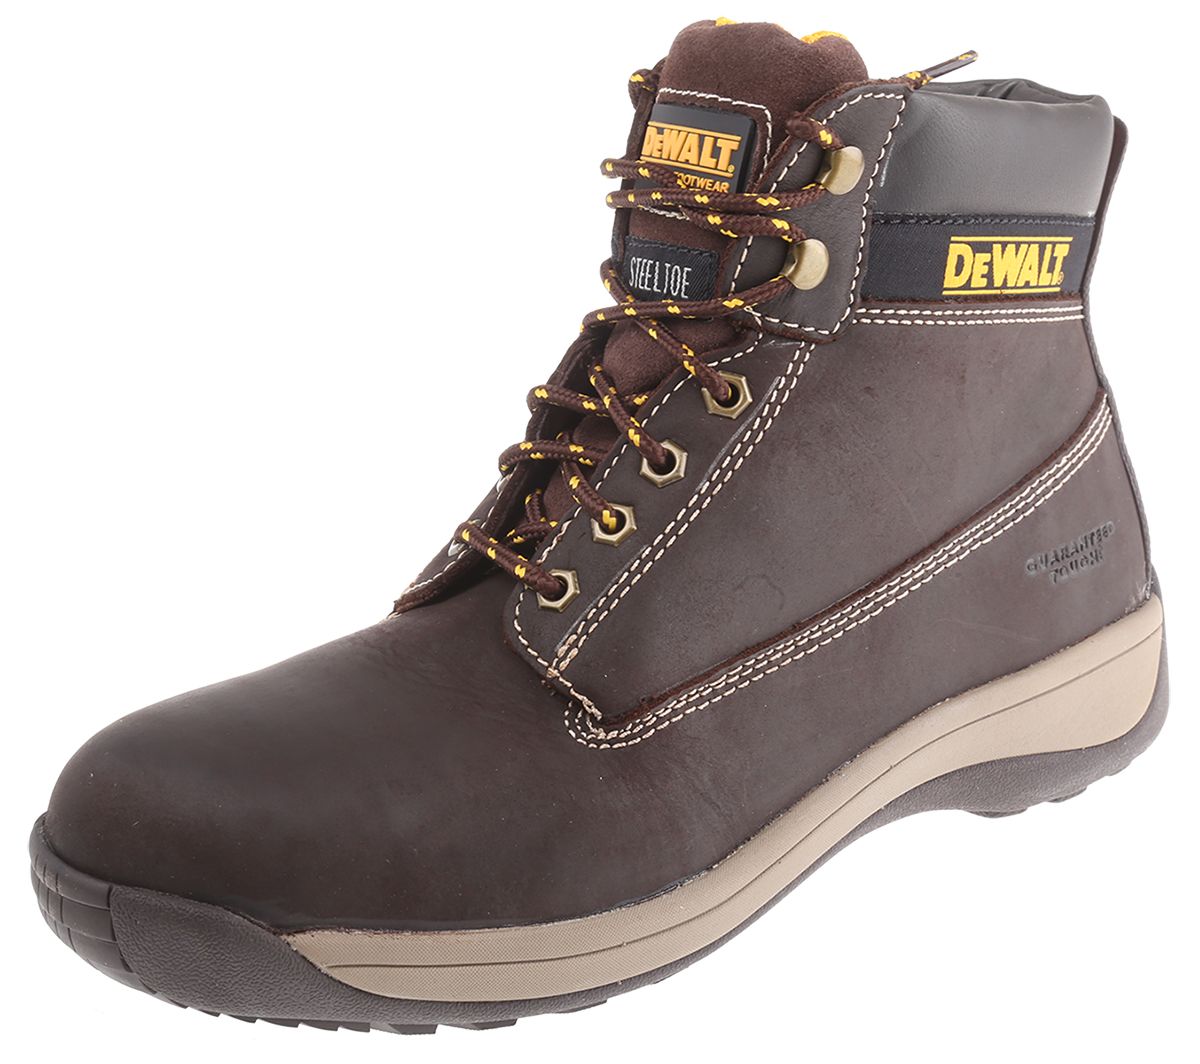 DeWALT Apprentice Brown Steel Toe Capped Mens Safety Boots, UK 9, EU 43